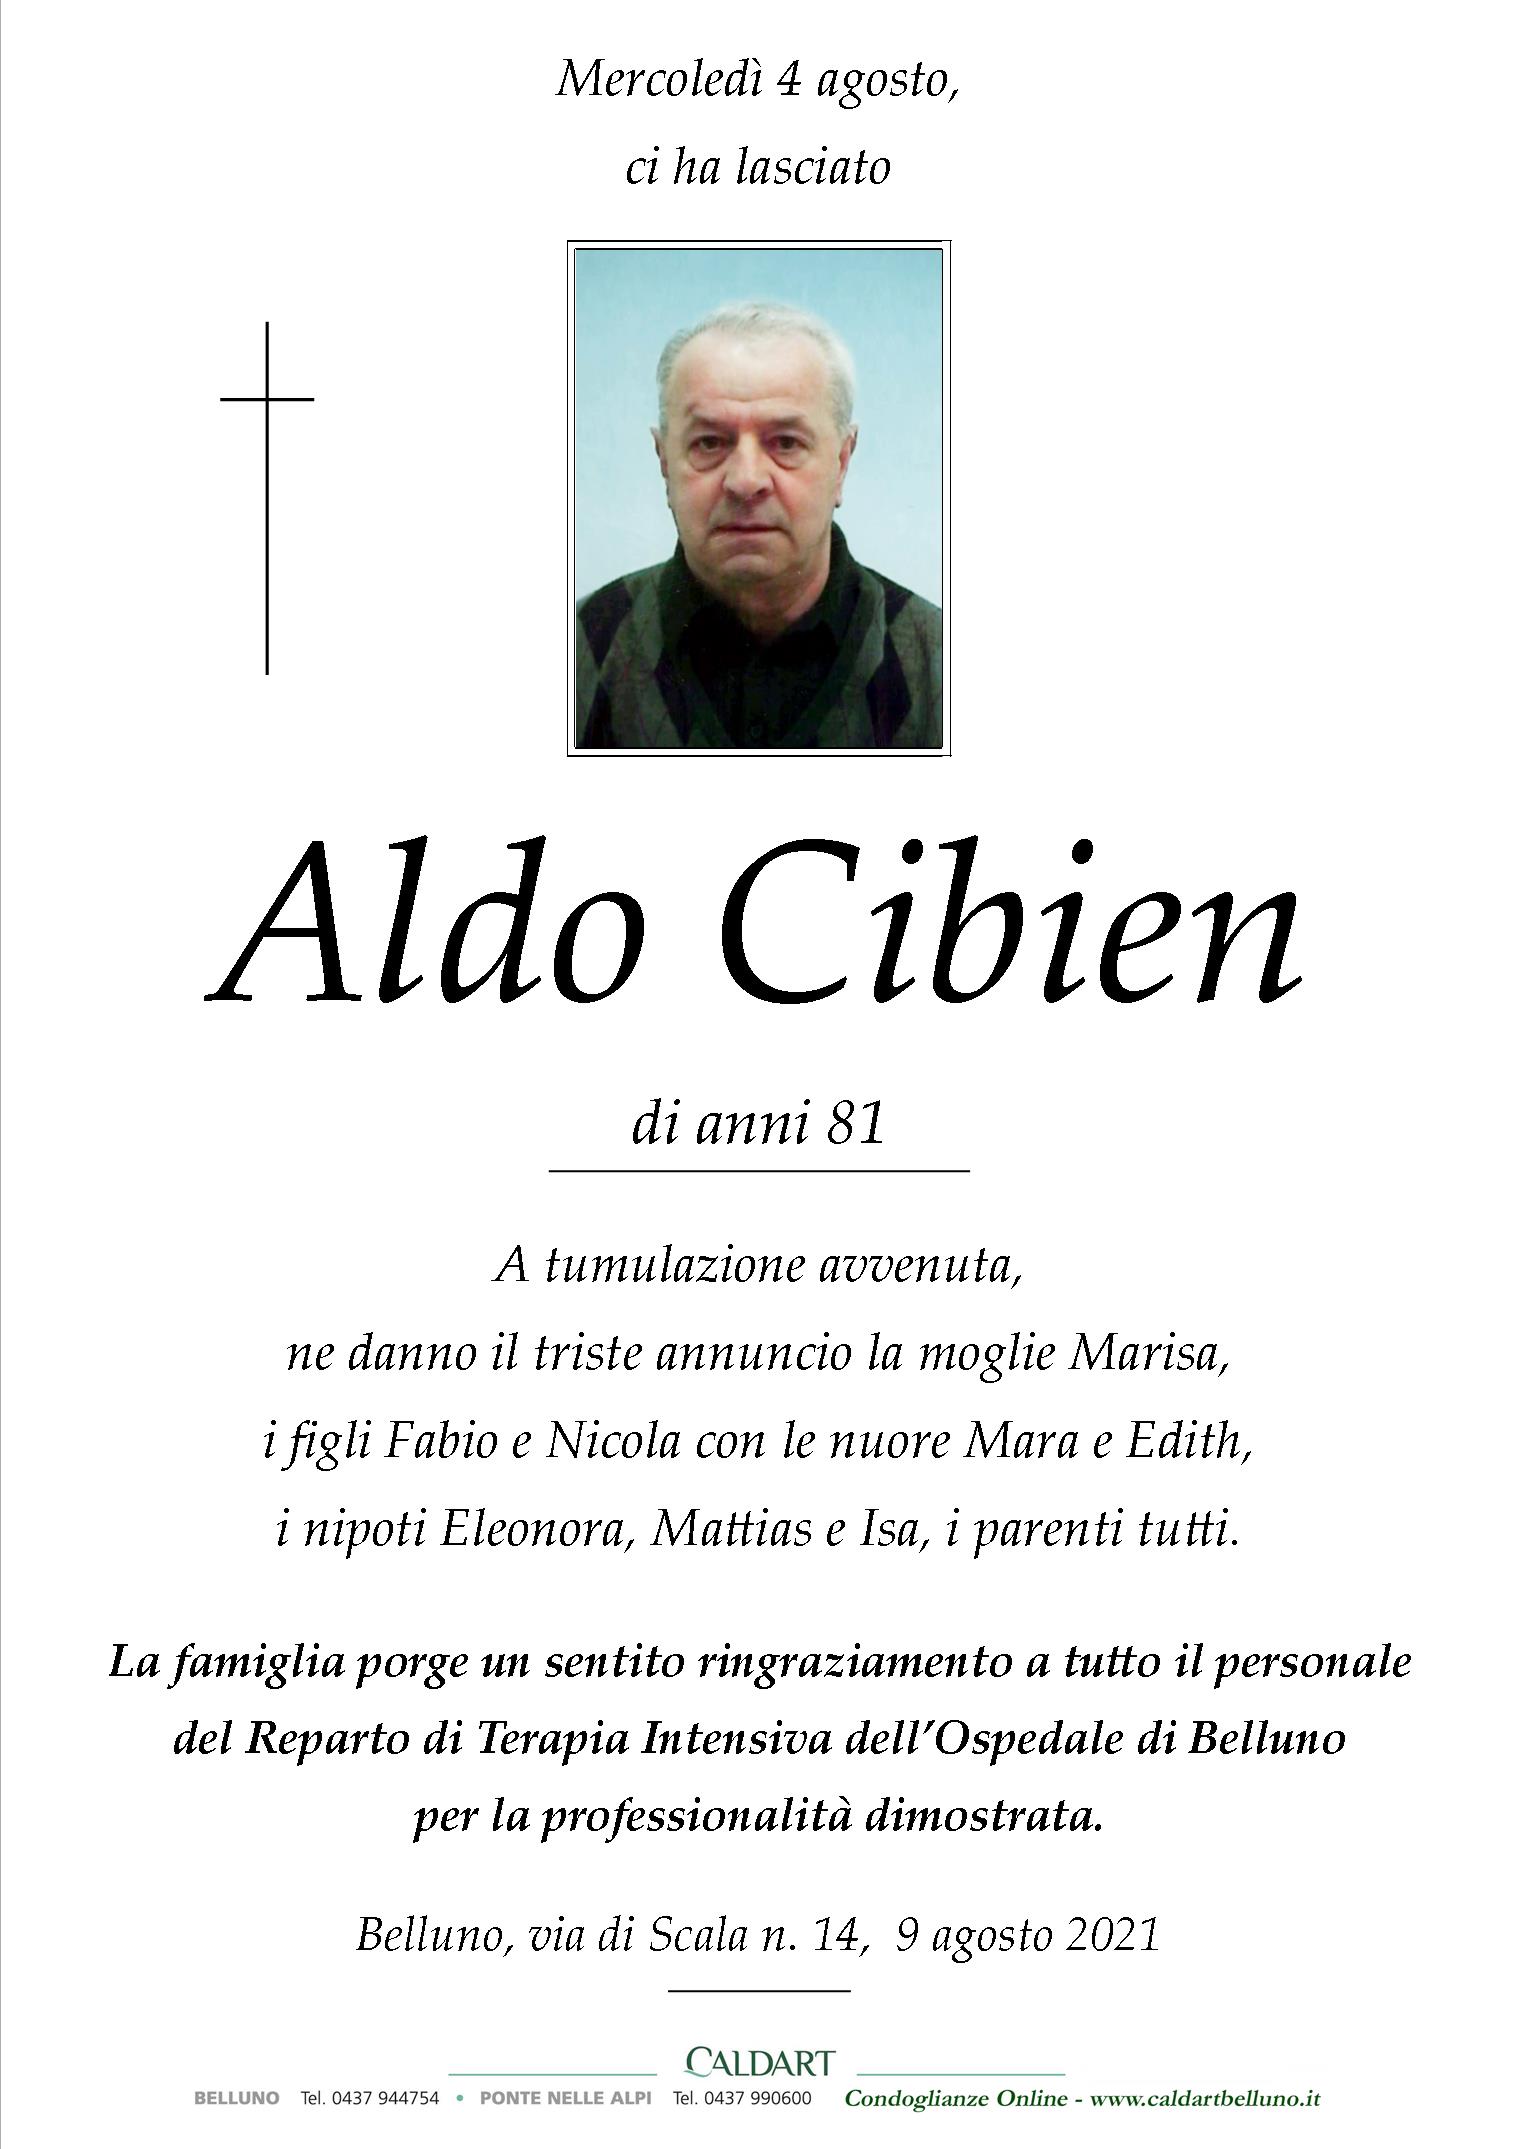 Cibien Aldo